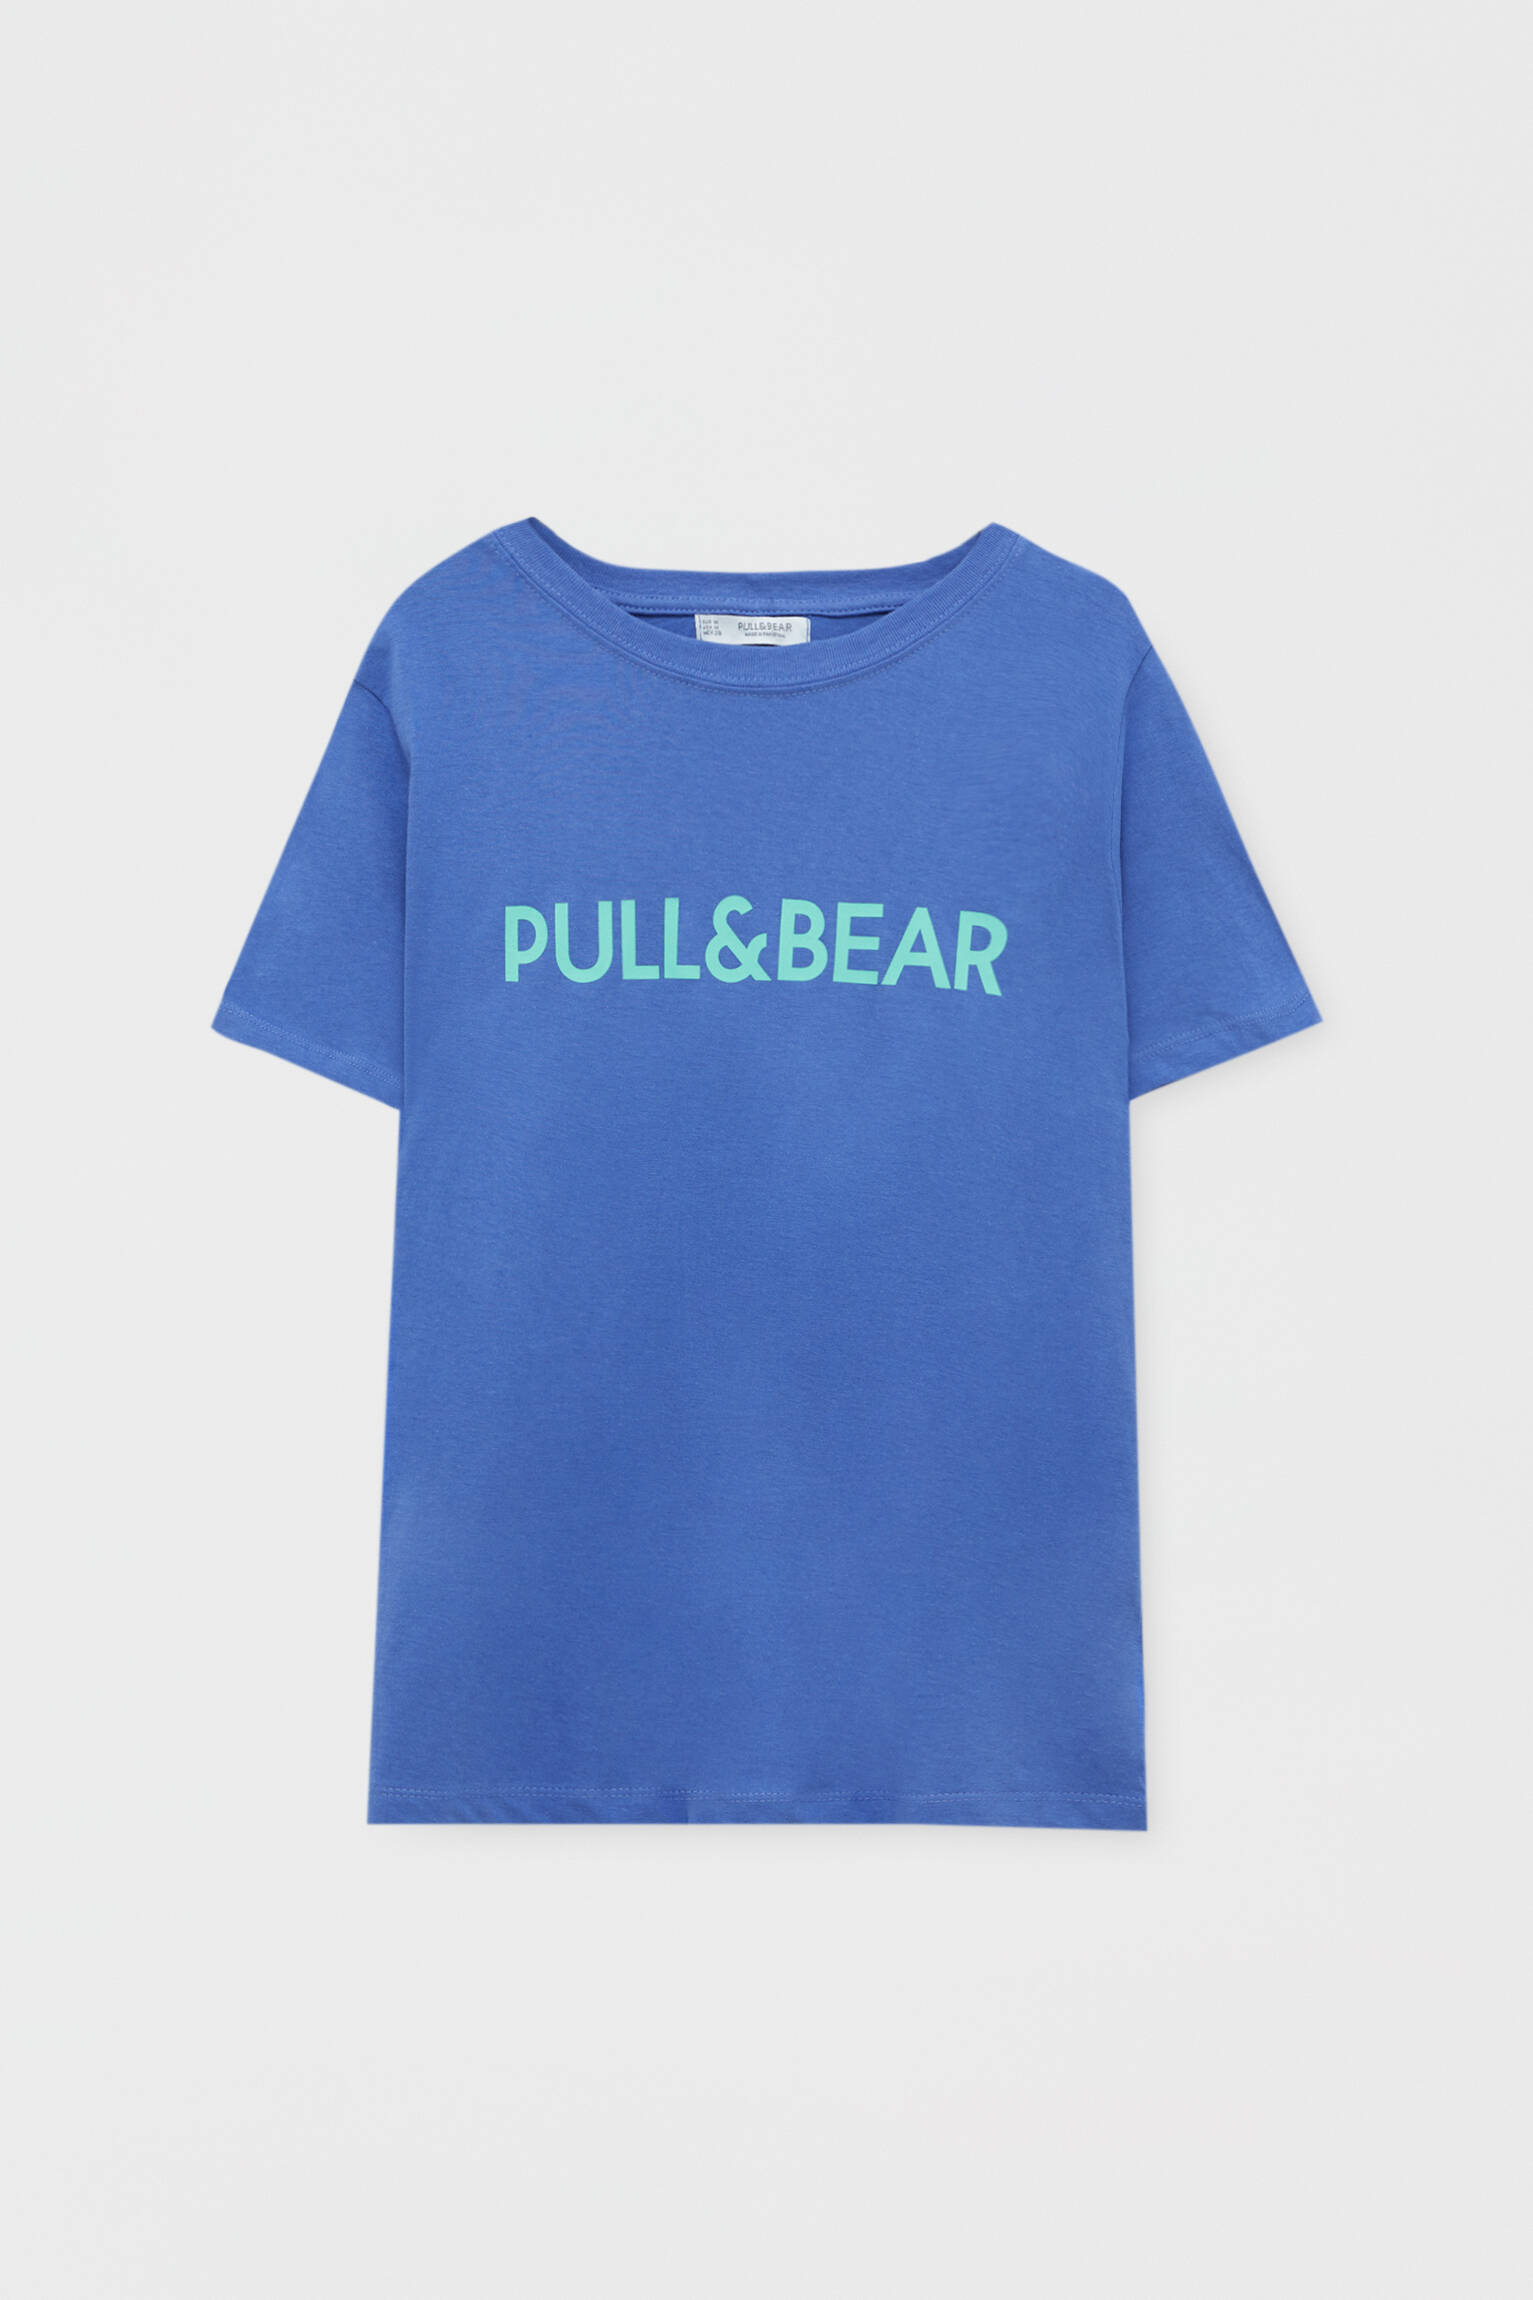 Pull & Bear - Playera básica Pull&Bear